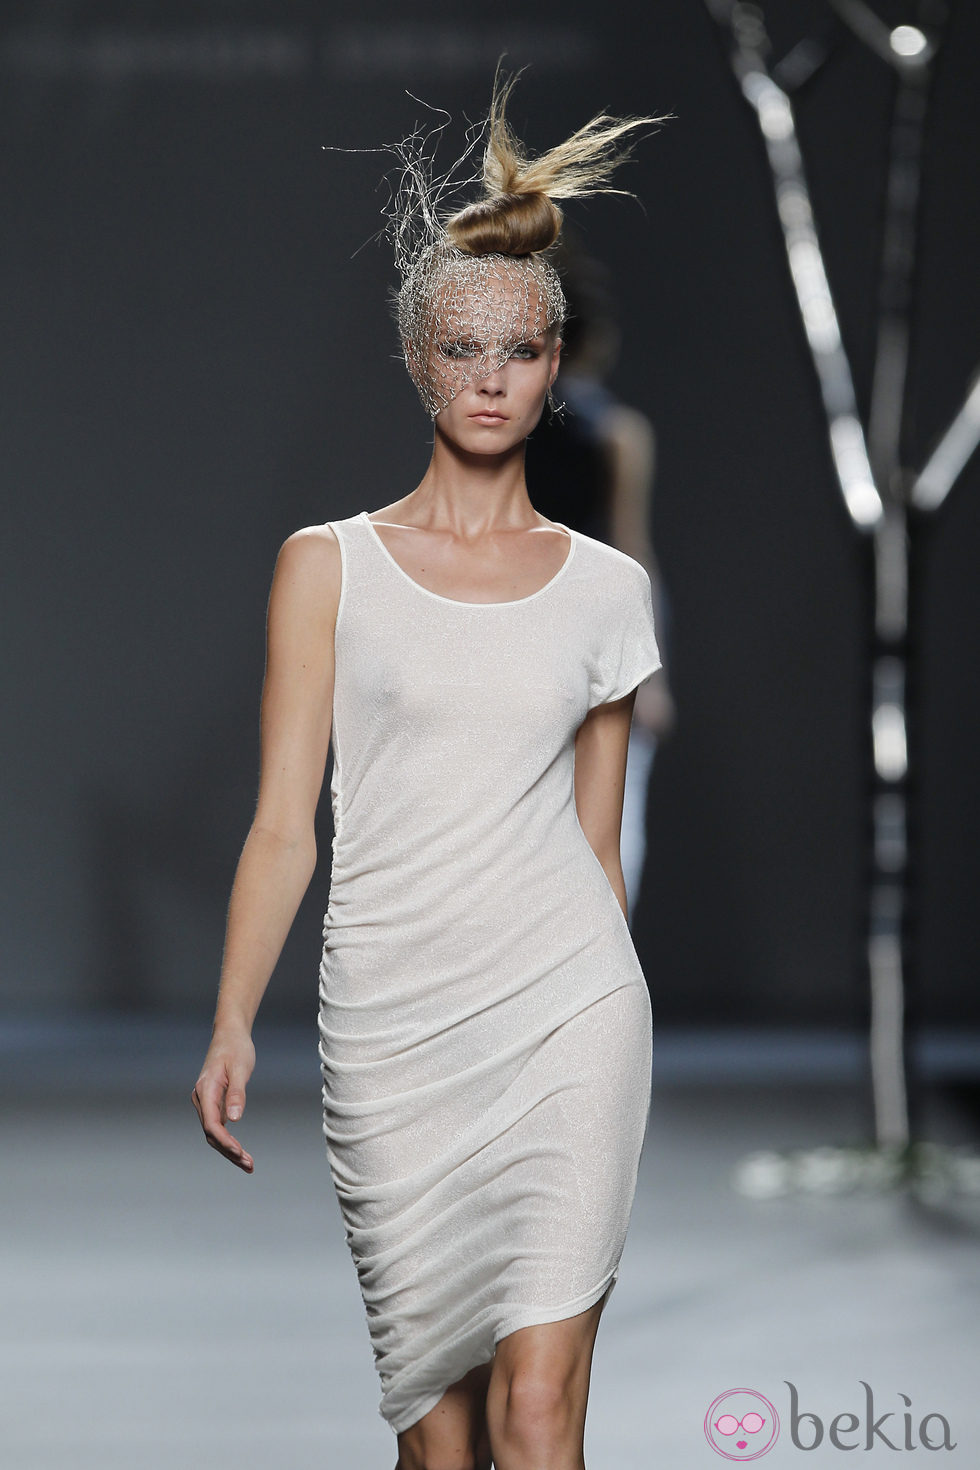 Vestido blanco de la colección primavera 2012 de Sara Coleman en Cibeles